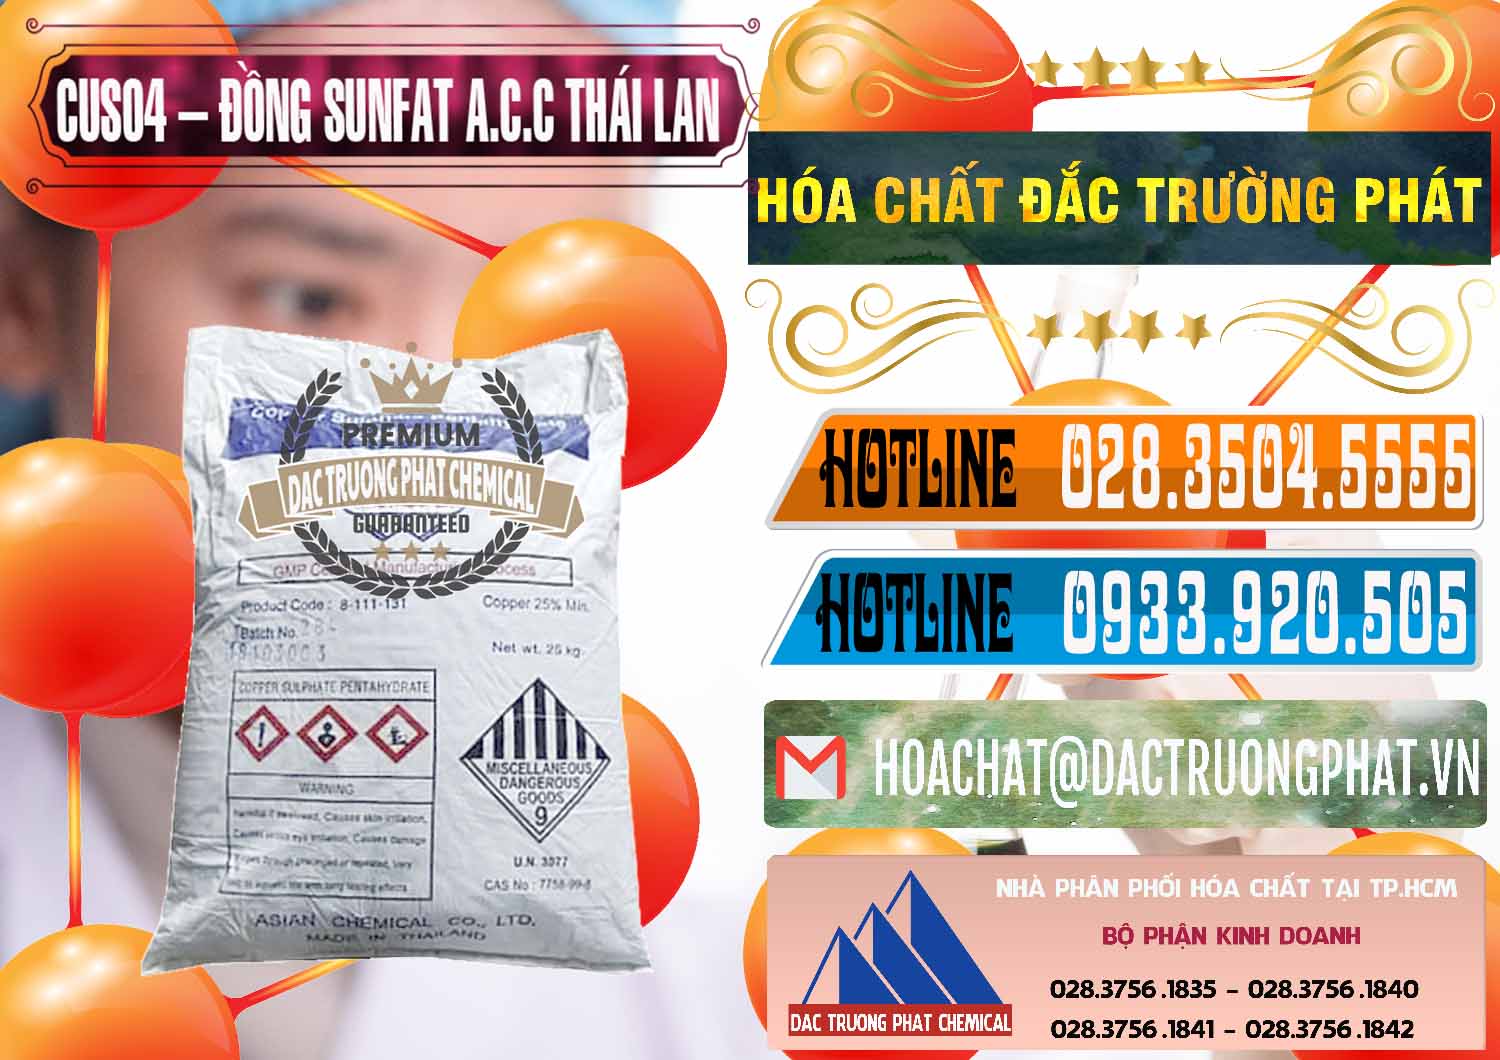 Nơi cung ứng và bán CuSO4 – Đồng Sunfat A.C.C Thái Lan - 0249 - Công ty chuyên kinh doanh - phân phối hóa chất tại TP.HCM - stmp.net